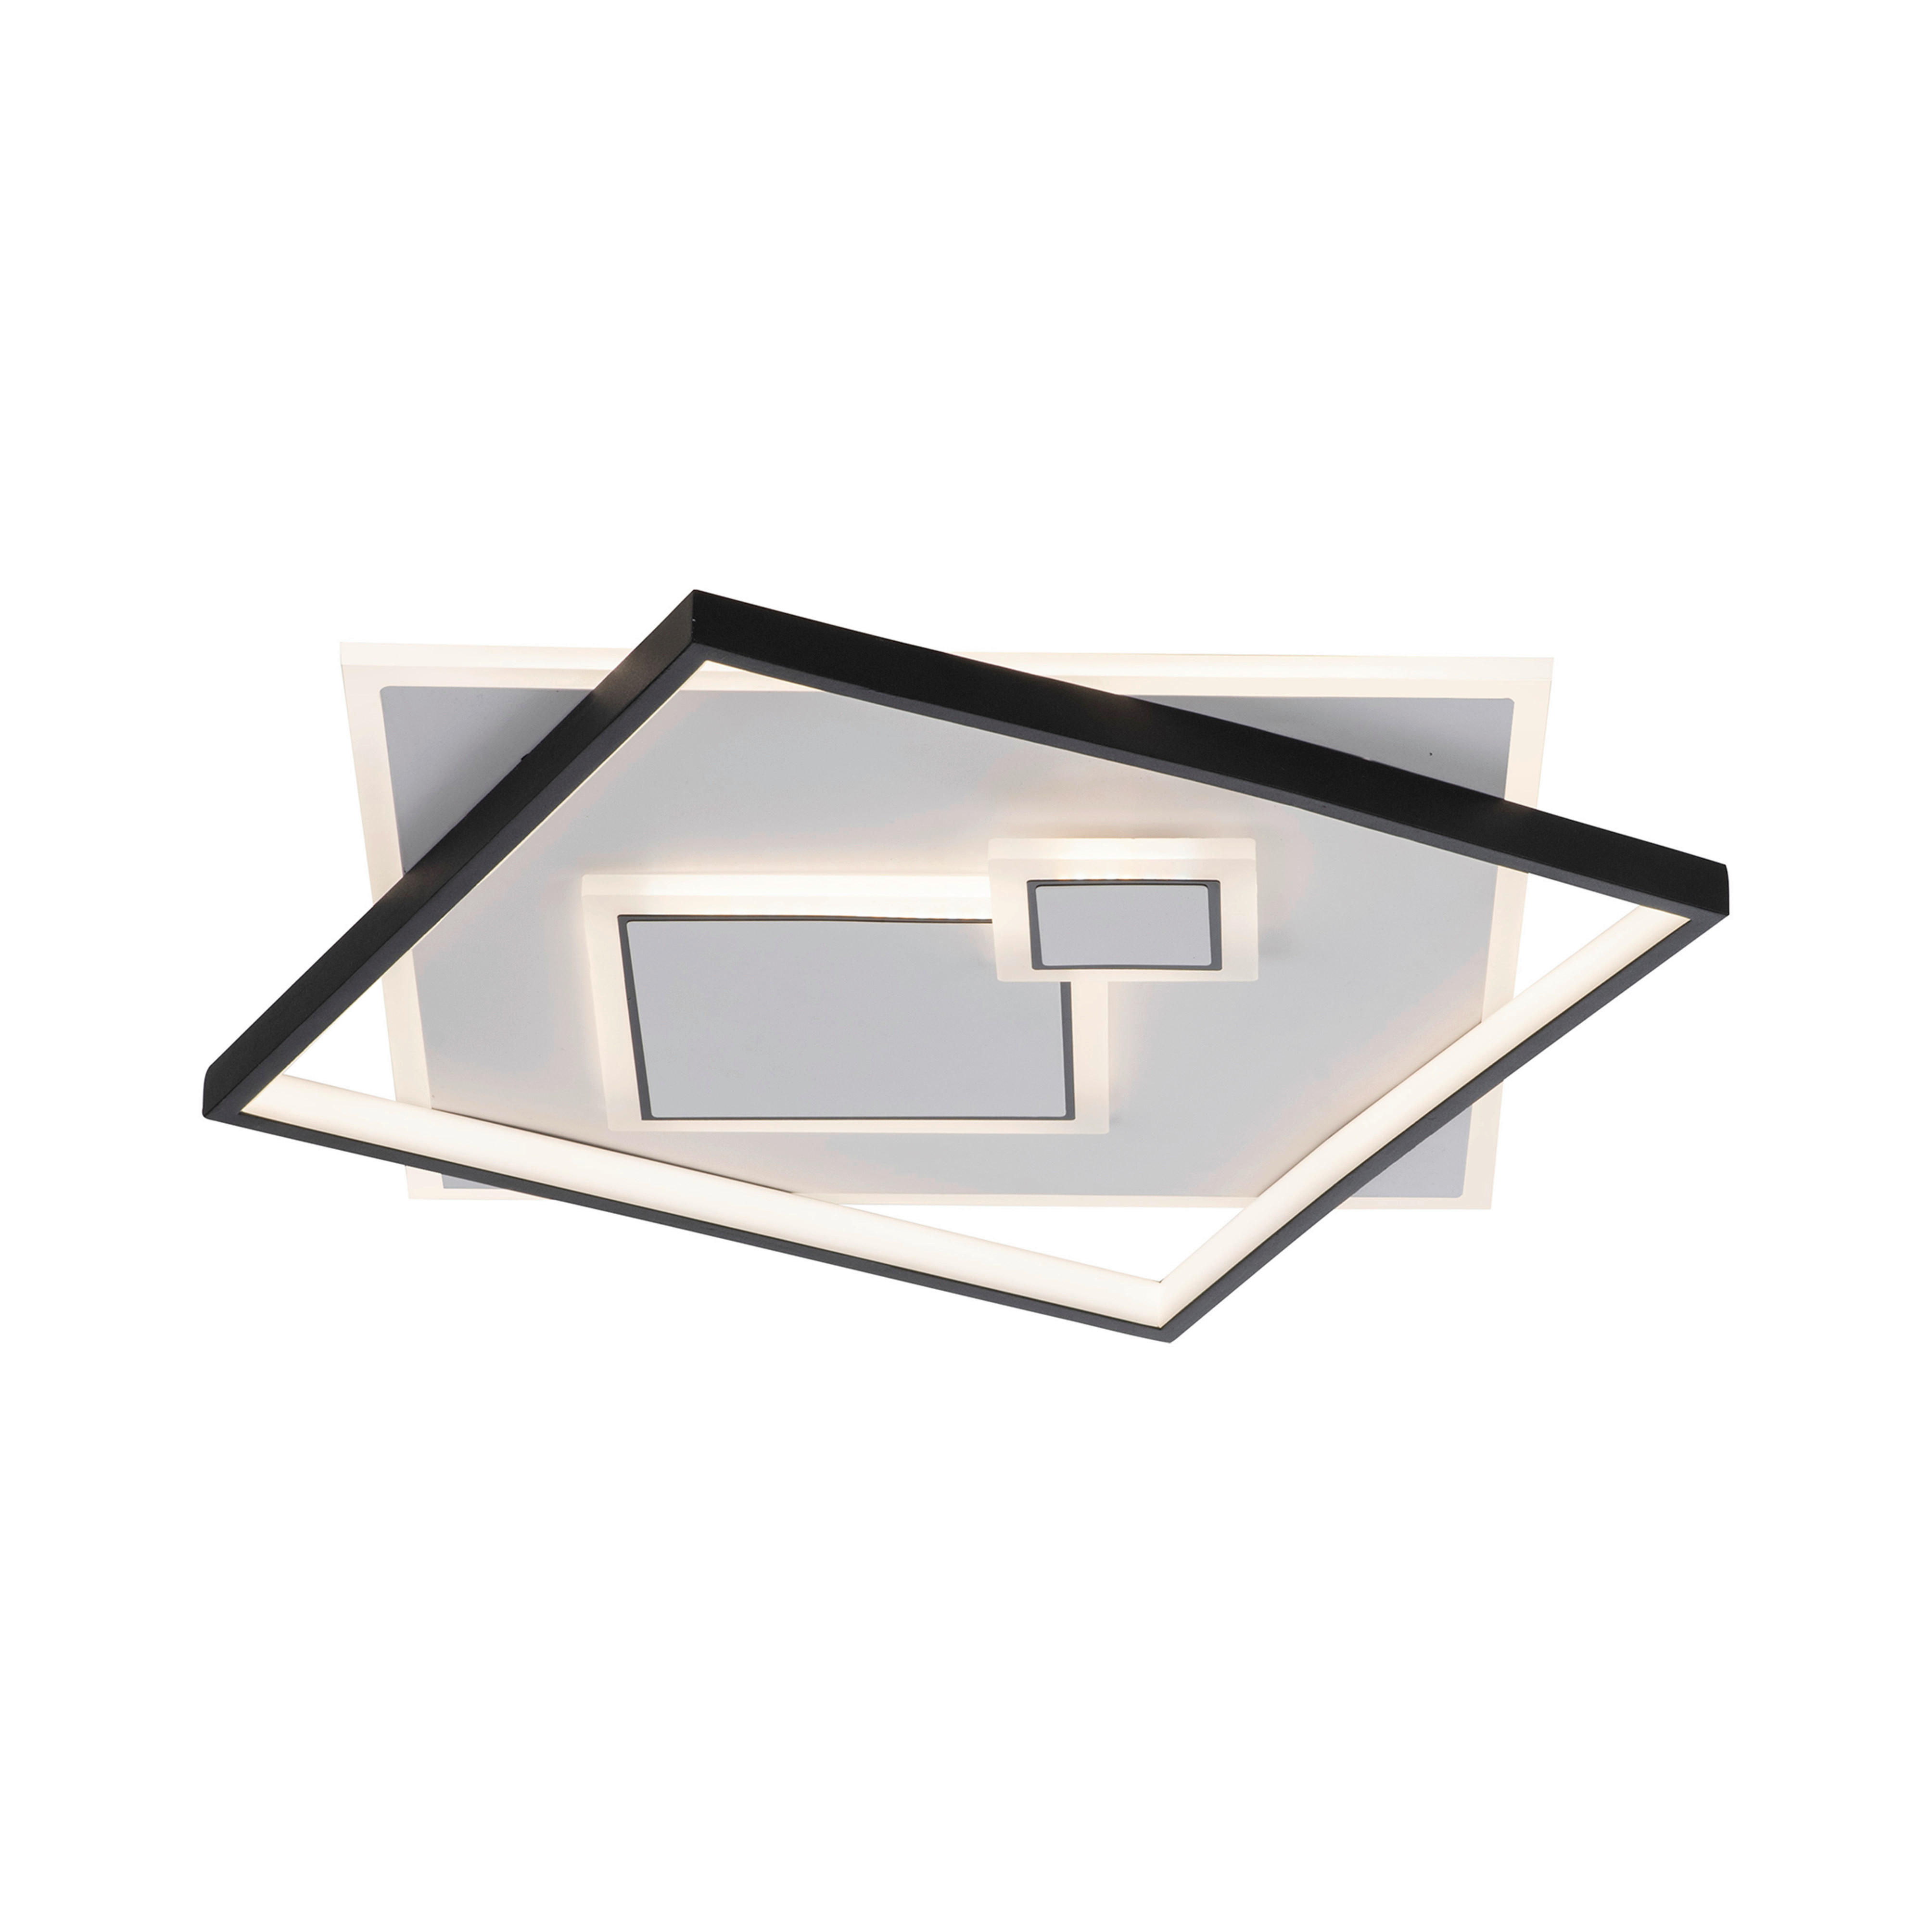 LED-DECKENLEUCHTE Mailak 57/57/6 cm   - Design, Kunststoff/Metall (57/57/6cm) - Paul Neuhaus